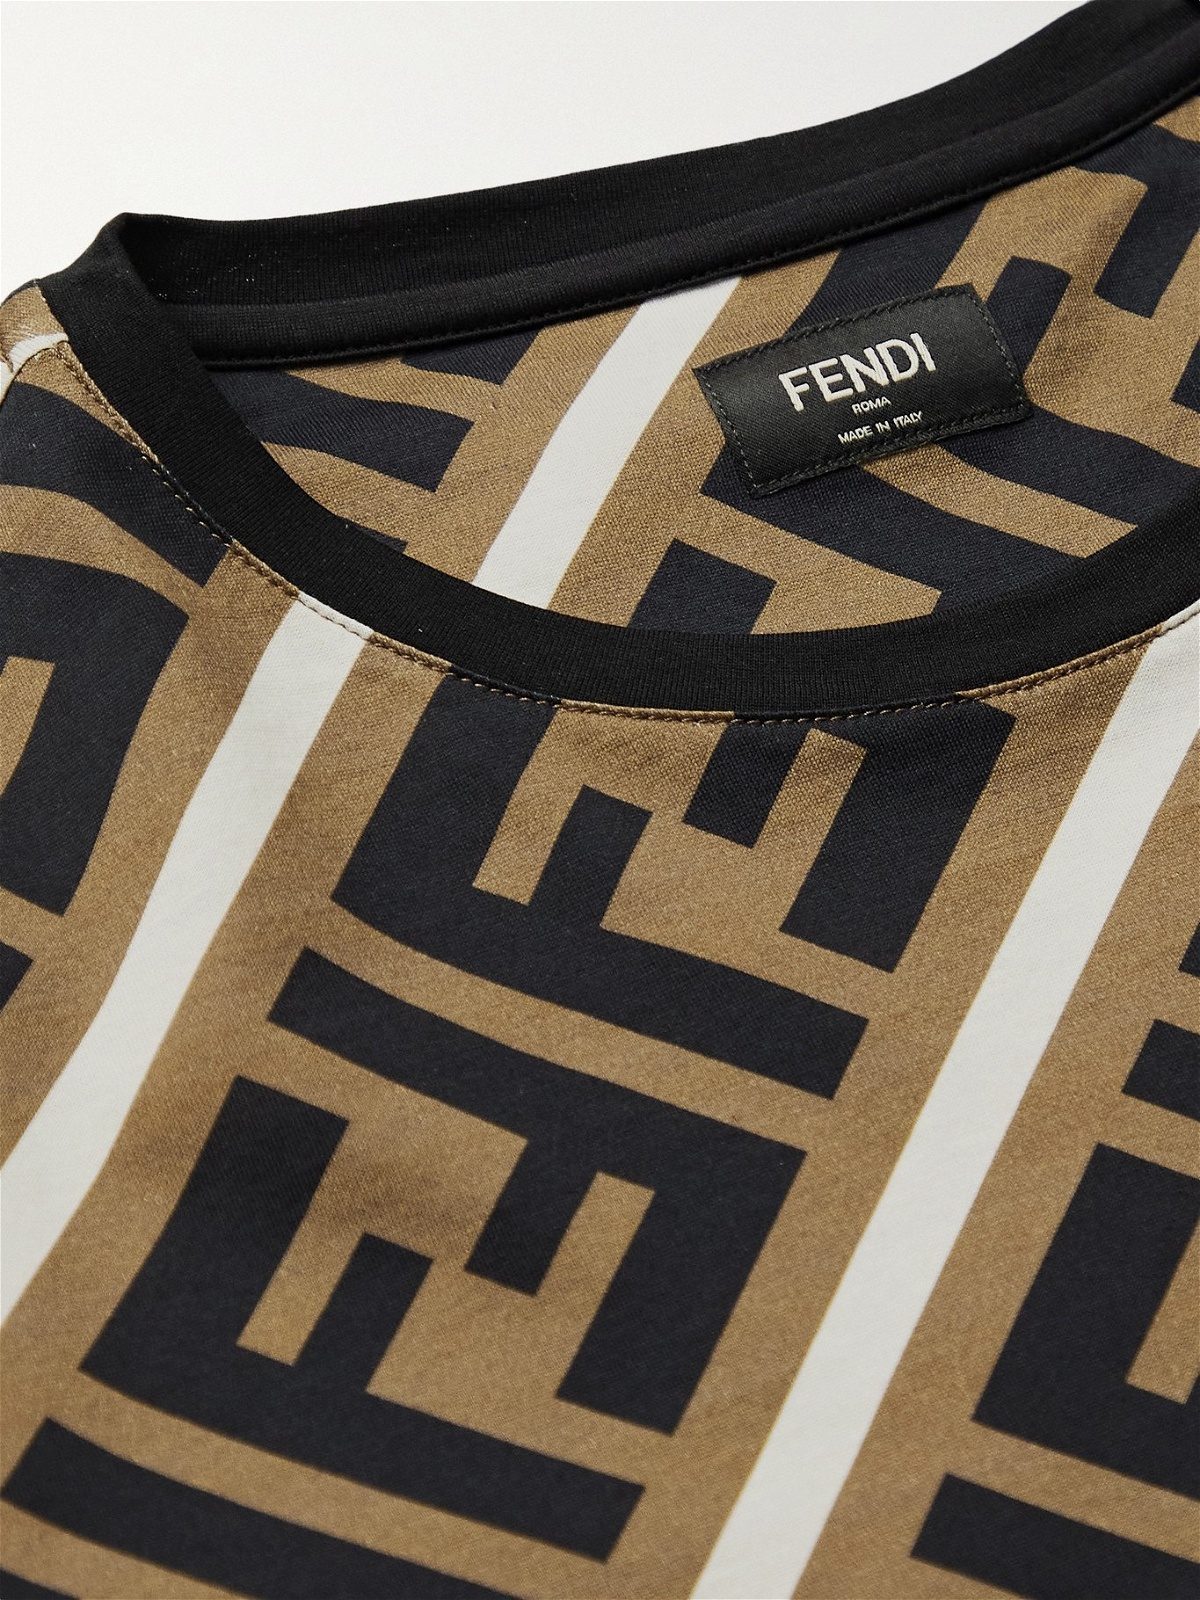 Fendi Ff Logo Monogram Cropped Shirt in Brown